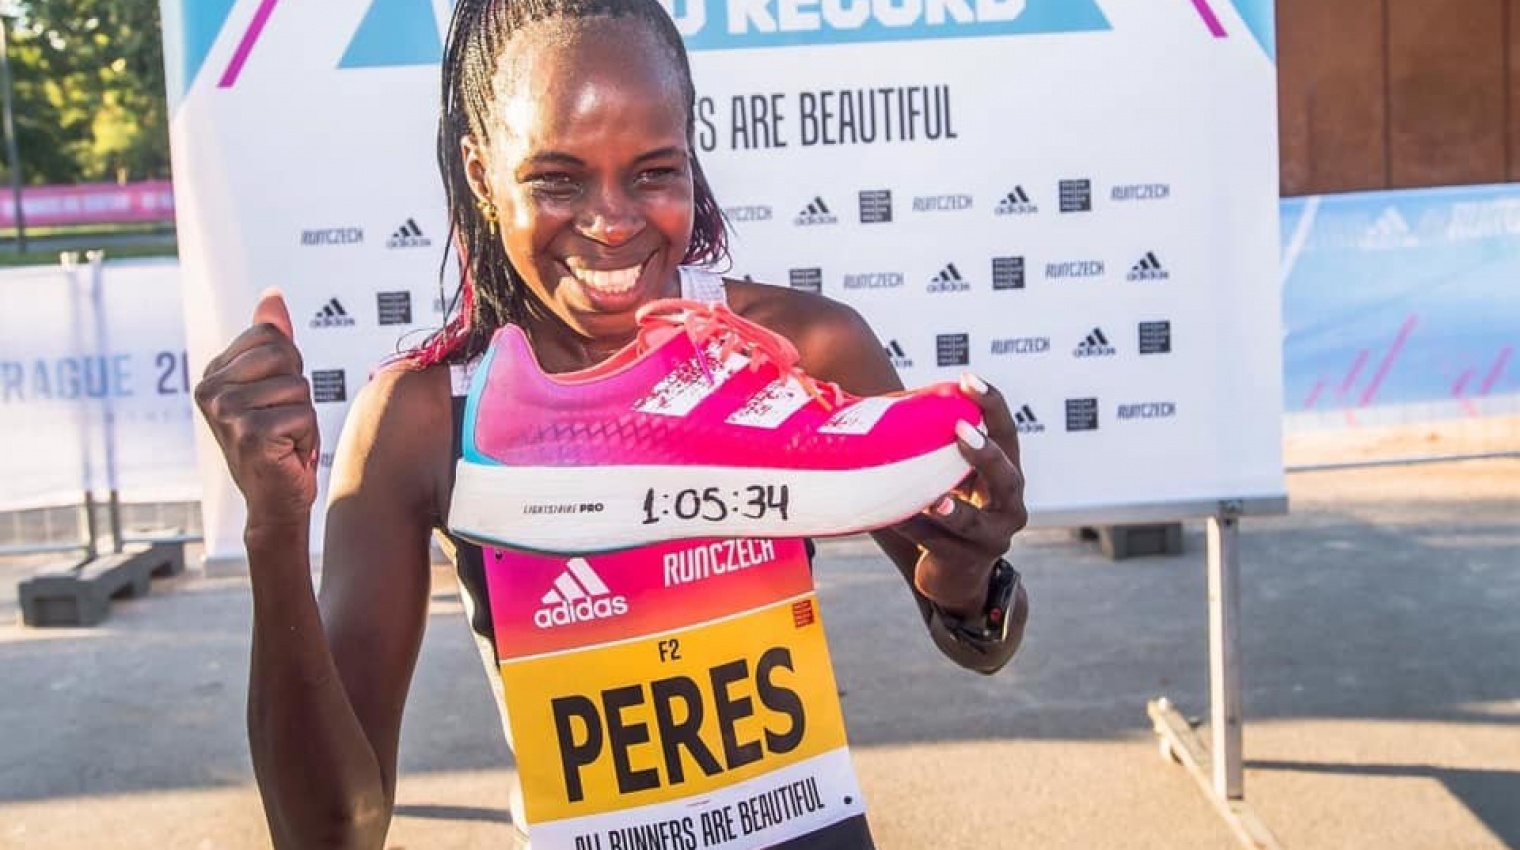 Перес Джепчирчир установила мировой рекорд на полумарафоне в Праге